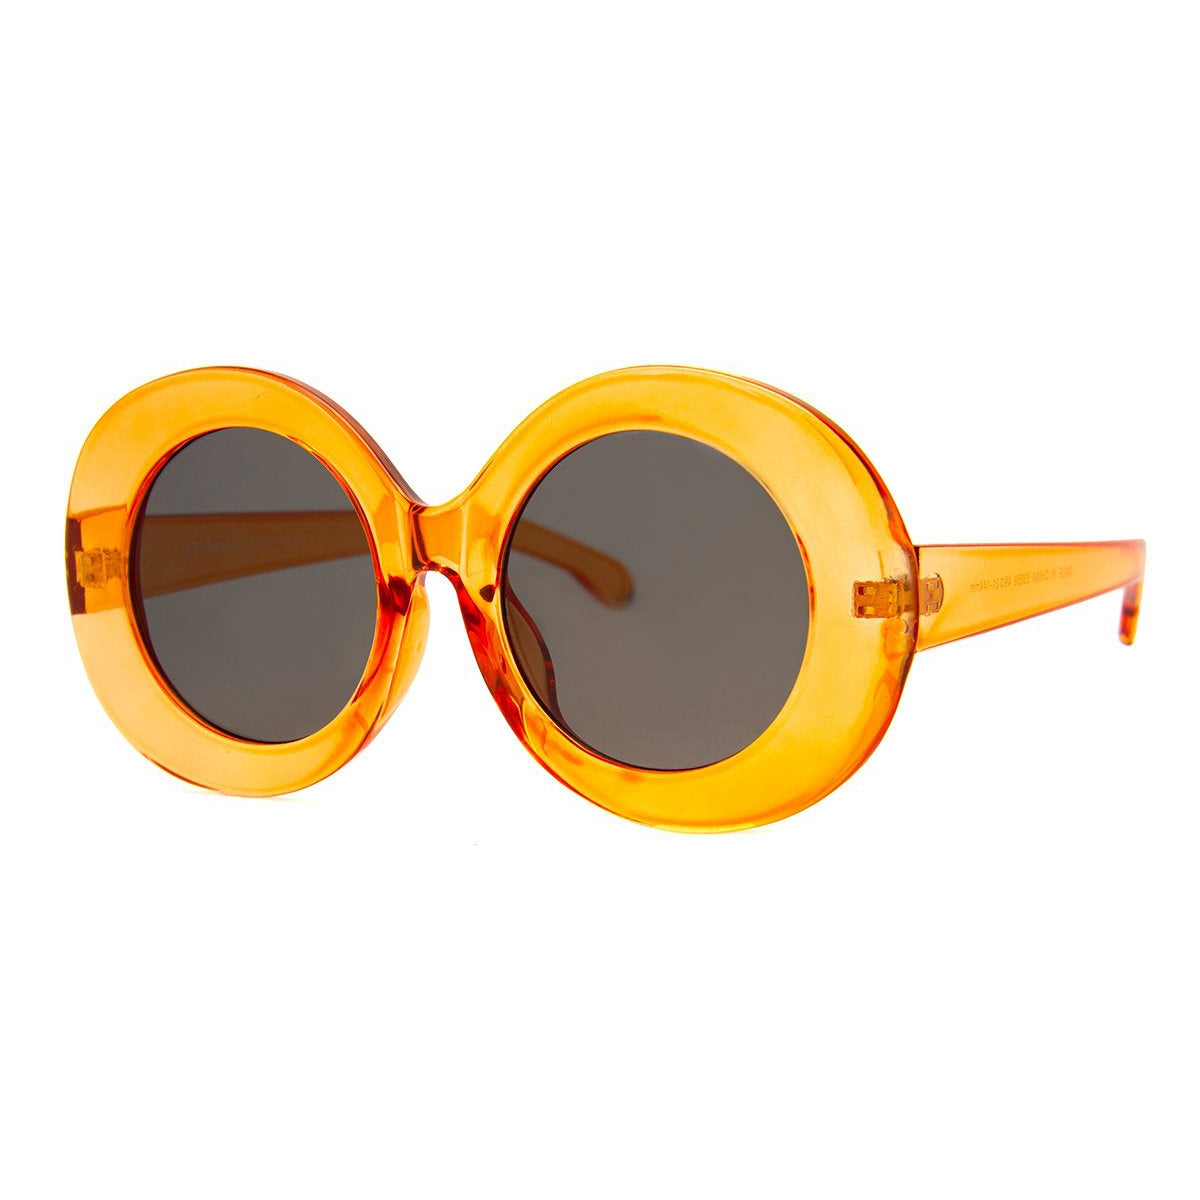 Bubbles Sunglasses - Orange